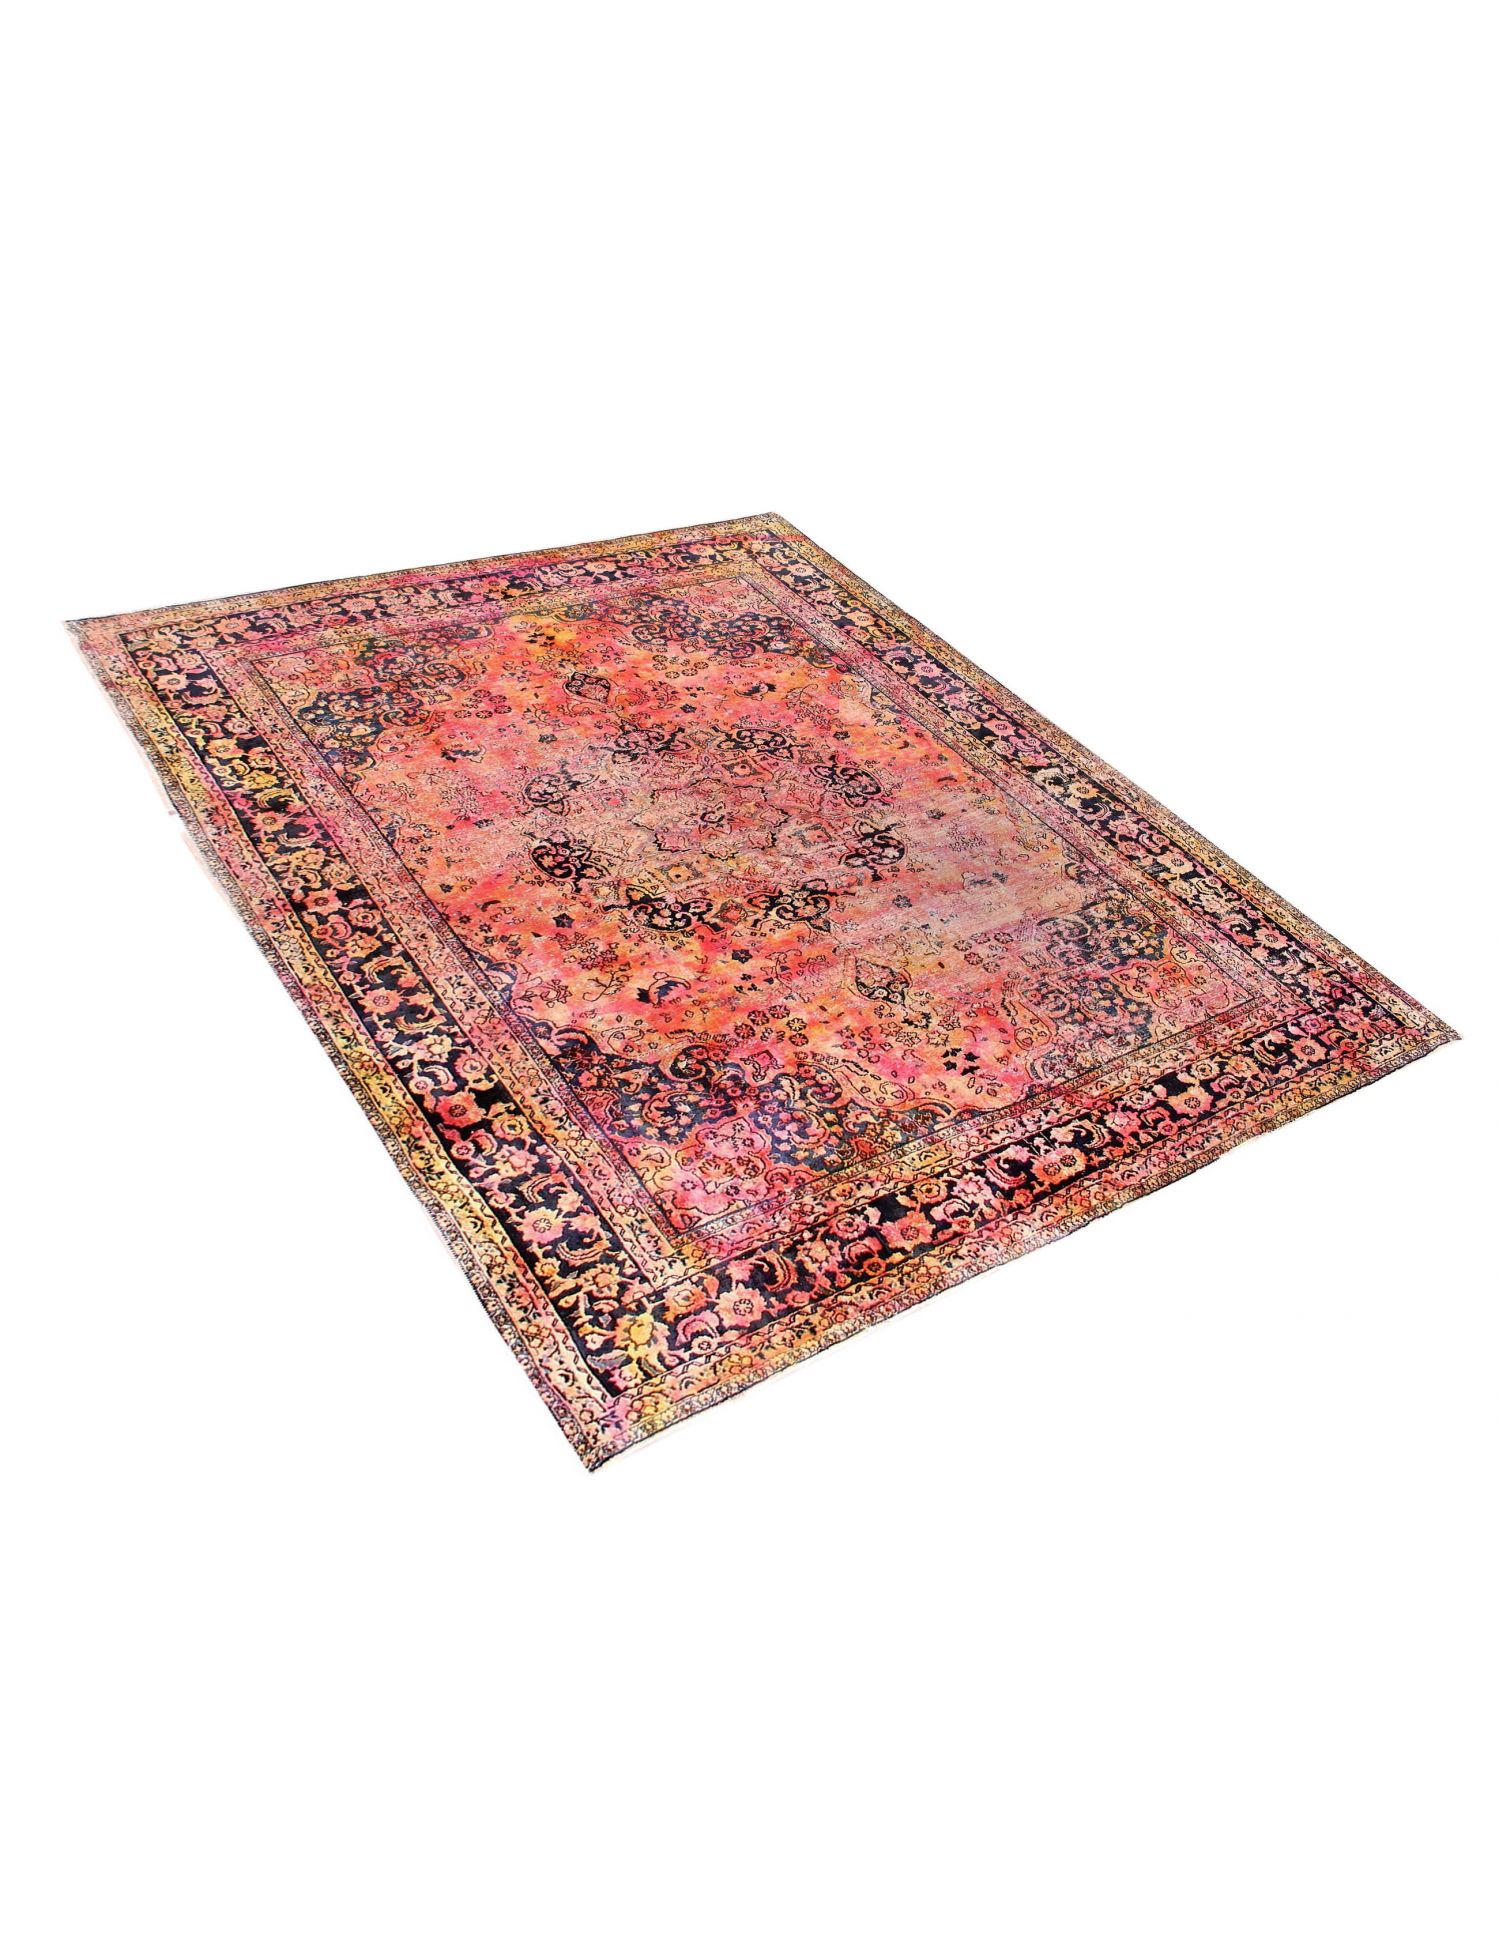 Persischer vintage teppich  mehrfarbig <br/>390 x 290 cm